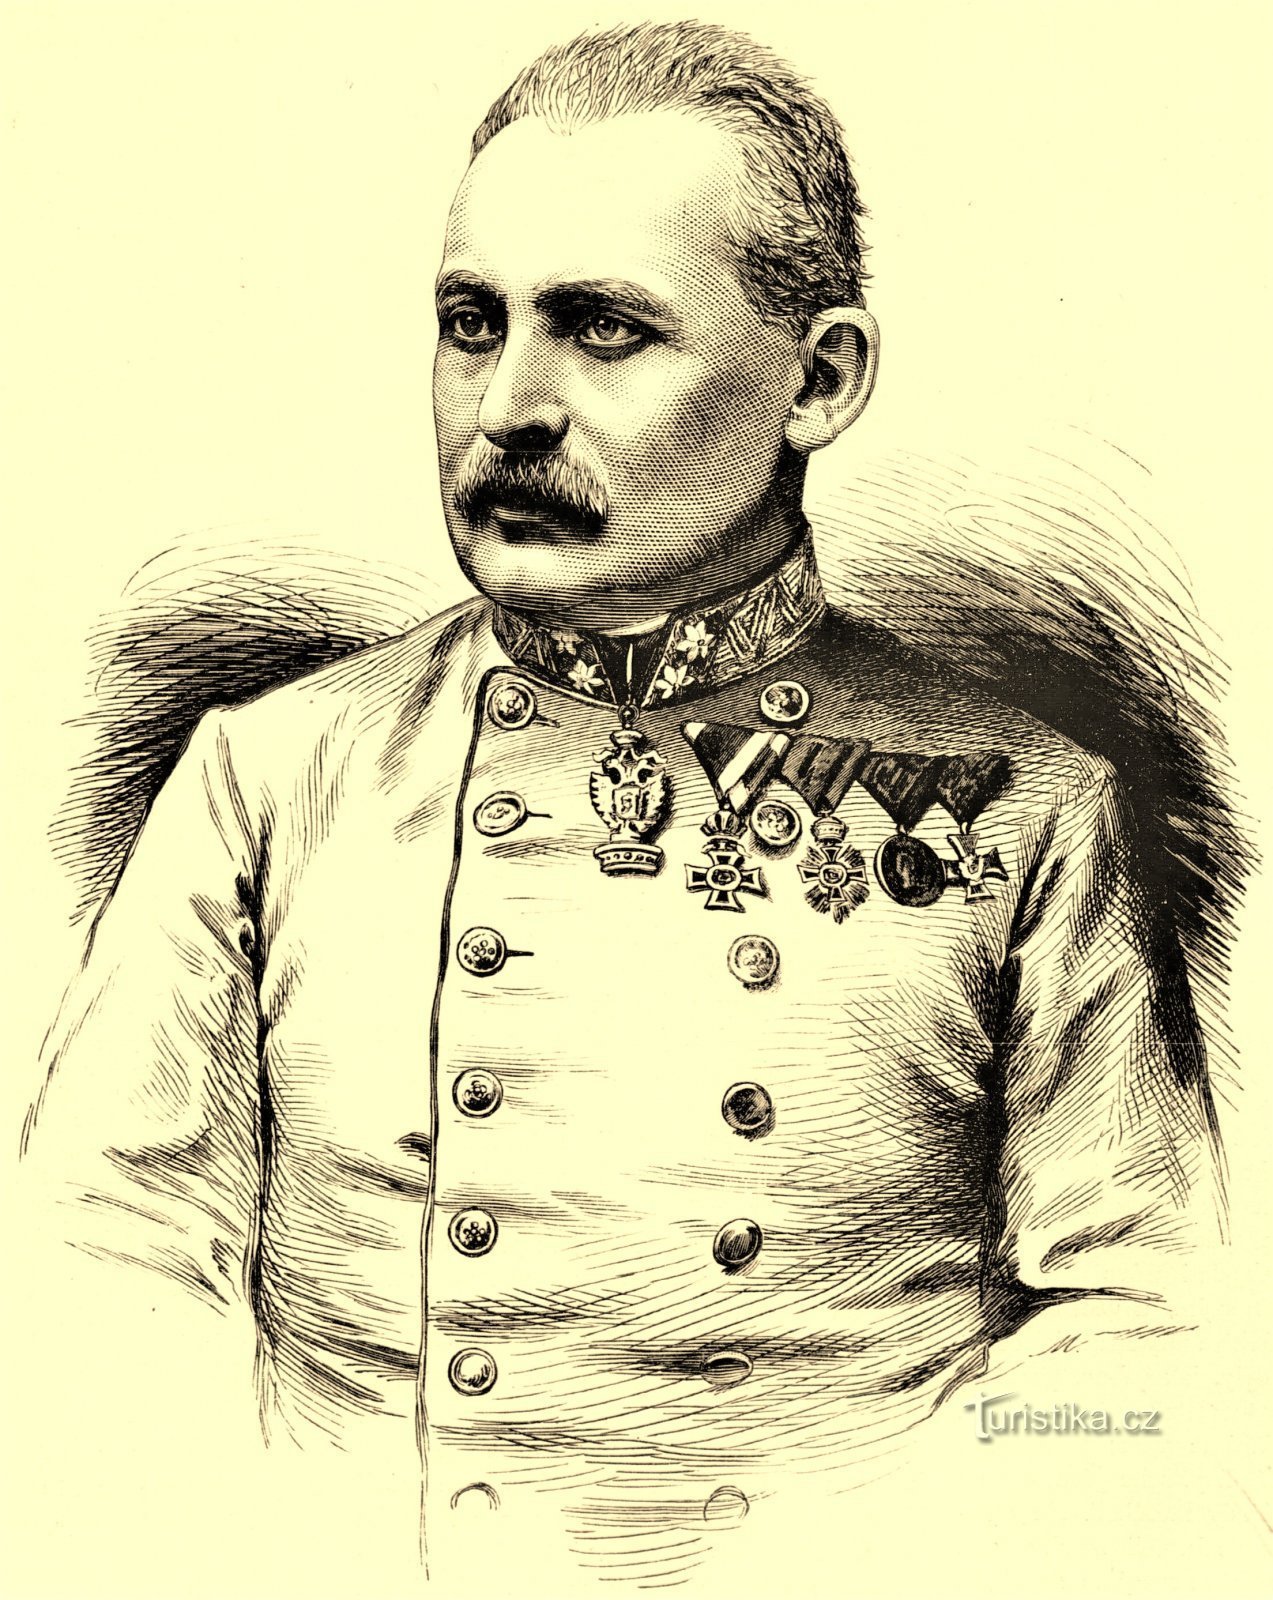 JUDr. Alfred ungkarlen Kraus i ett porträtt från 1882